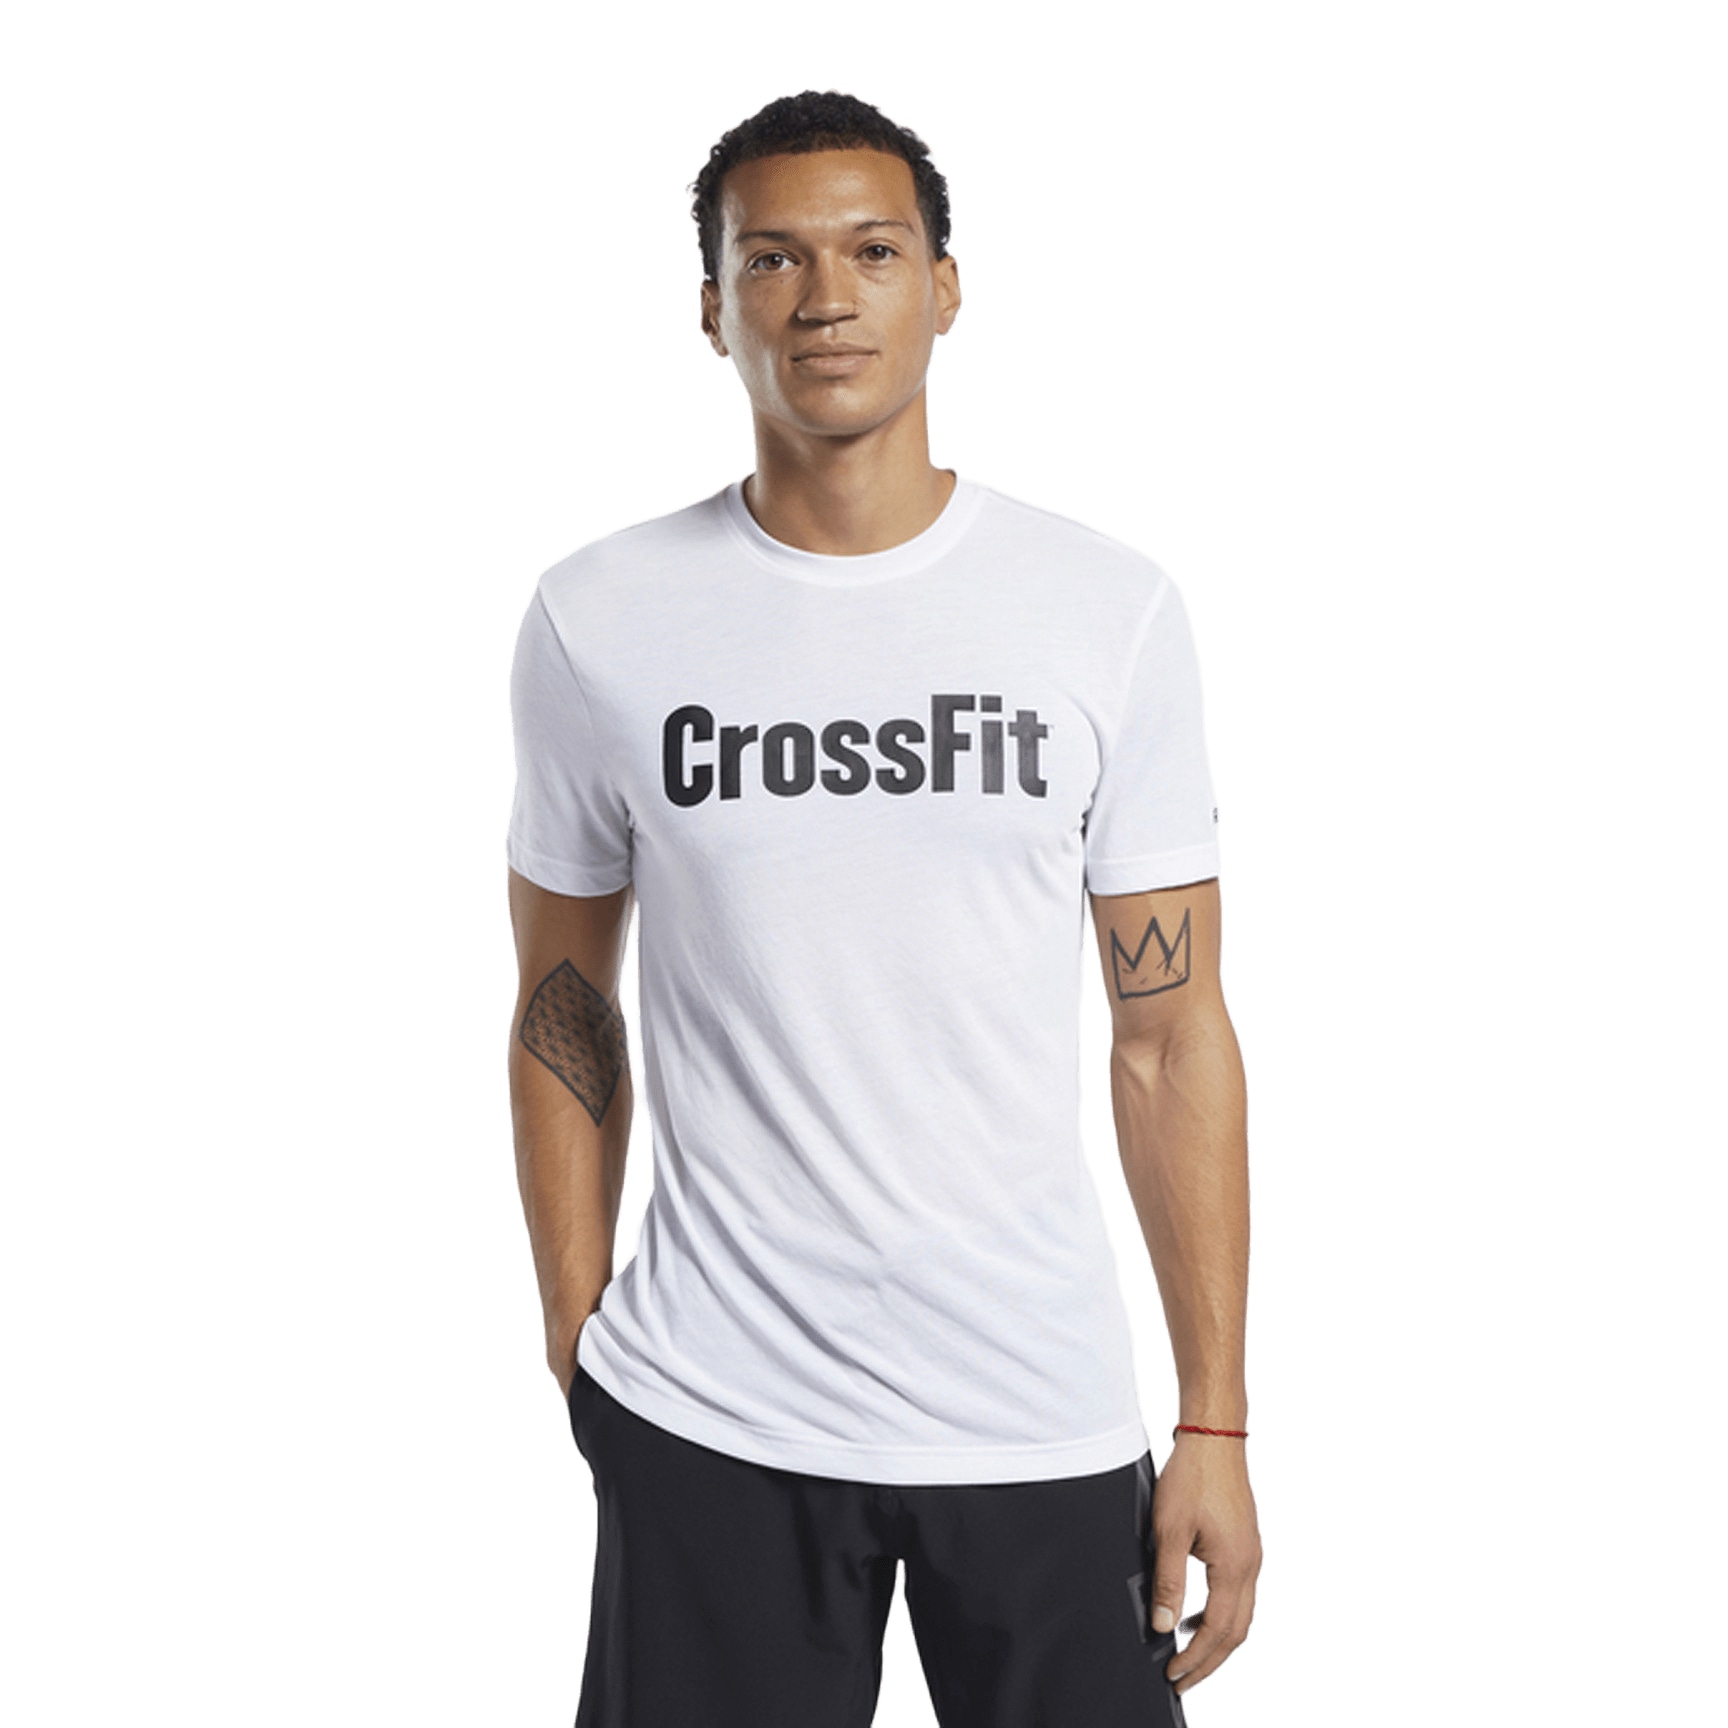 T-shirt Uomo - Fittest Freakest - Abbigliamento, calzature e accessori per  CrossFit e Training.